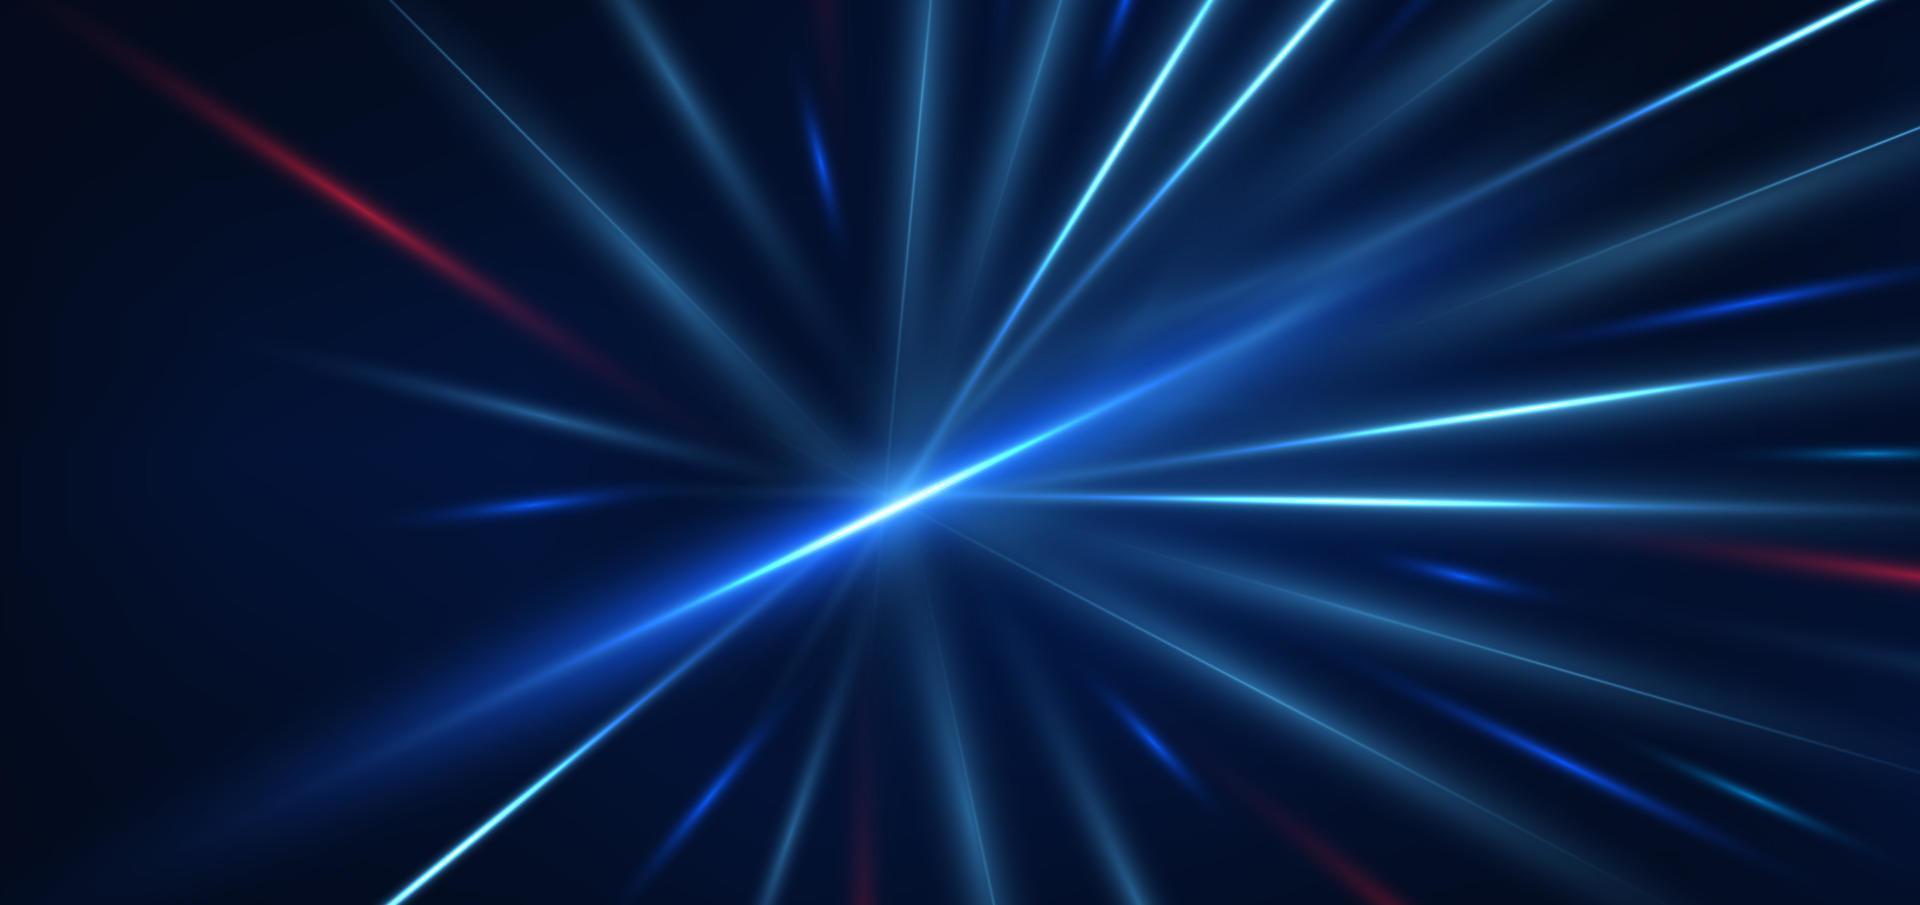 tecnología abstracta líneas de luz azul y roja brillantes futuristas con efecto de desenfoque de movimiento de velocidad sobre fondo azul oscuro. vector